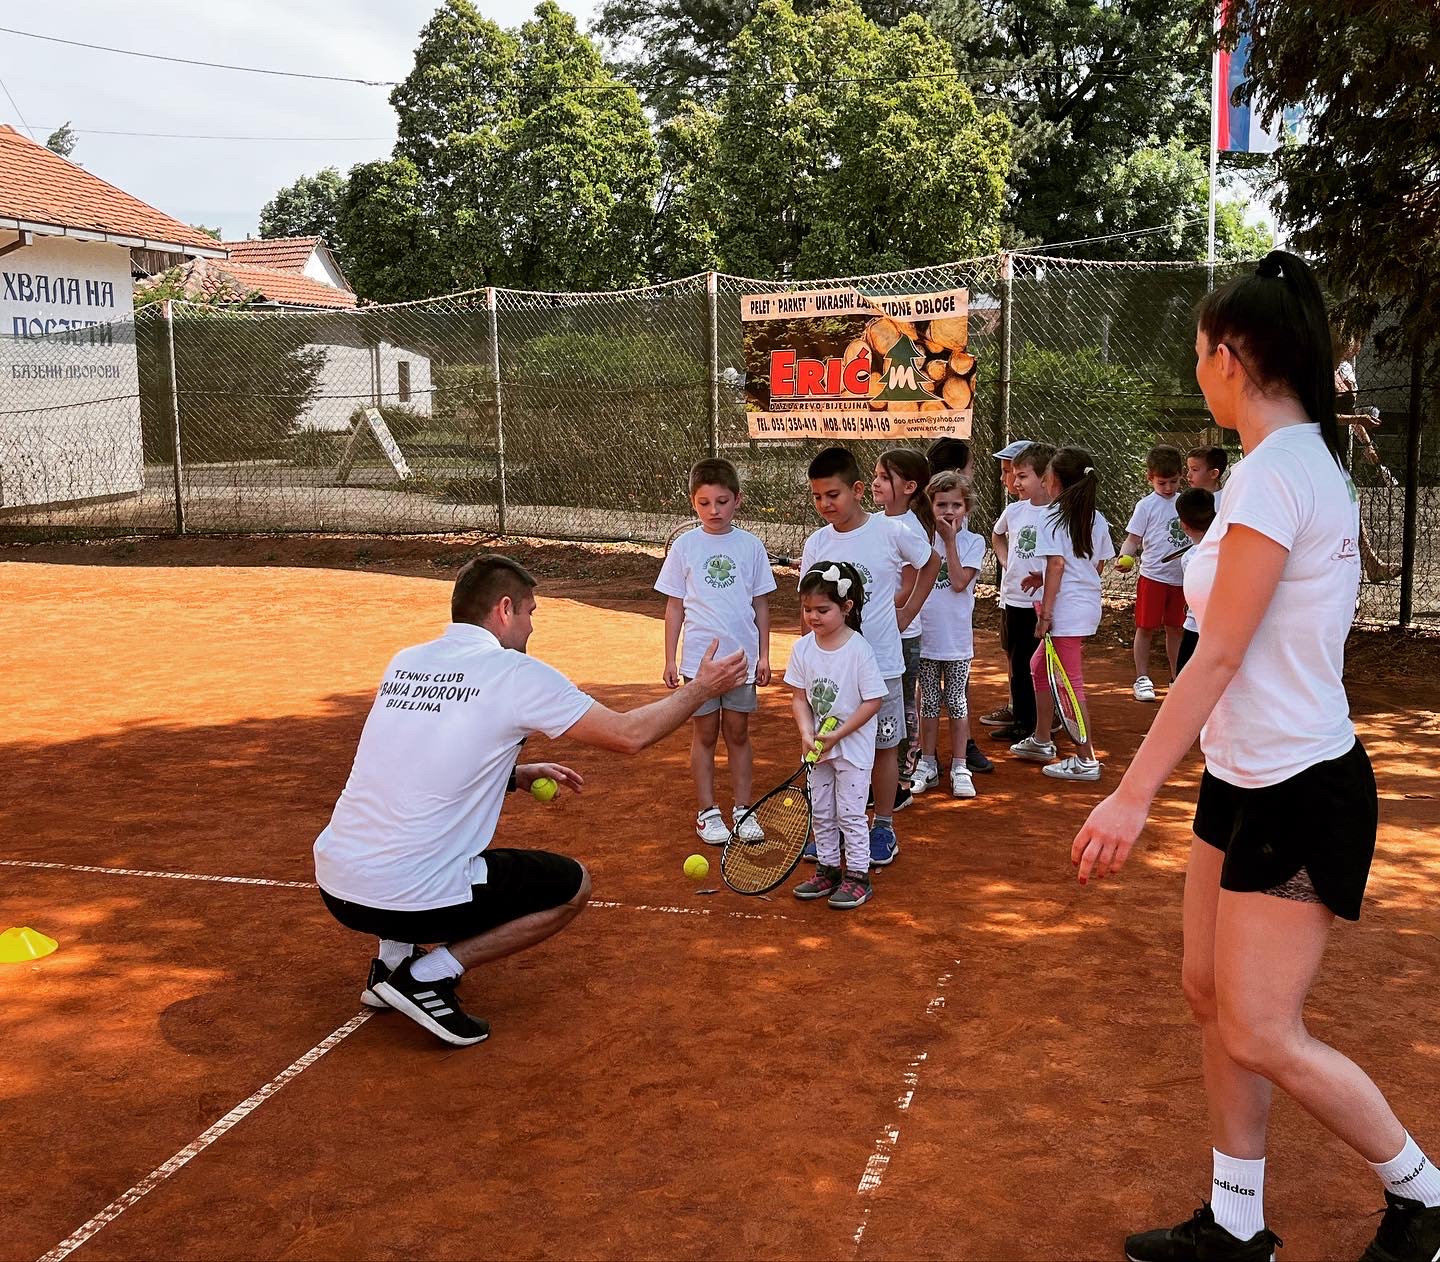 Bijeljinski mališani prvi put na teniskom terenu, u kome “čuči” budući Đoković?